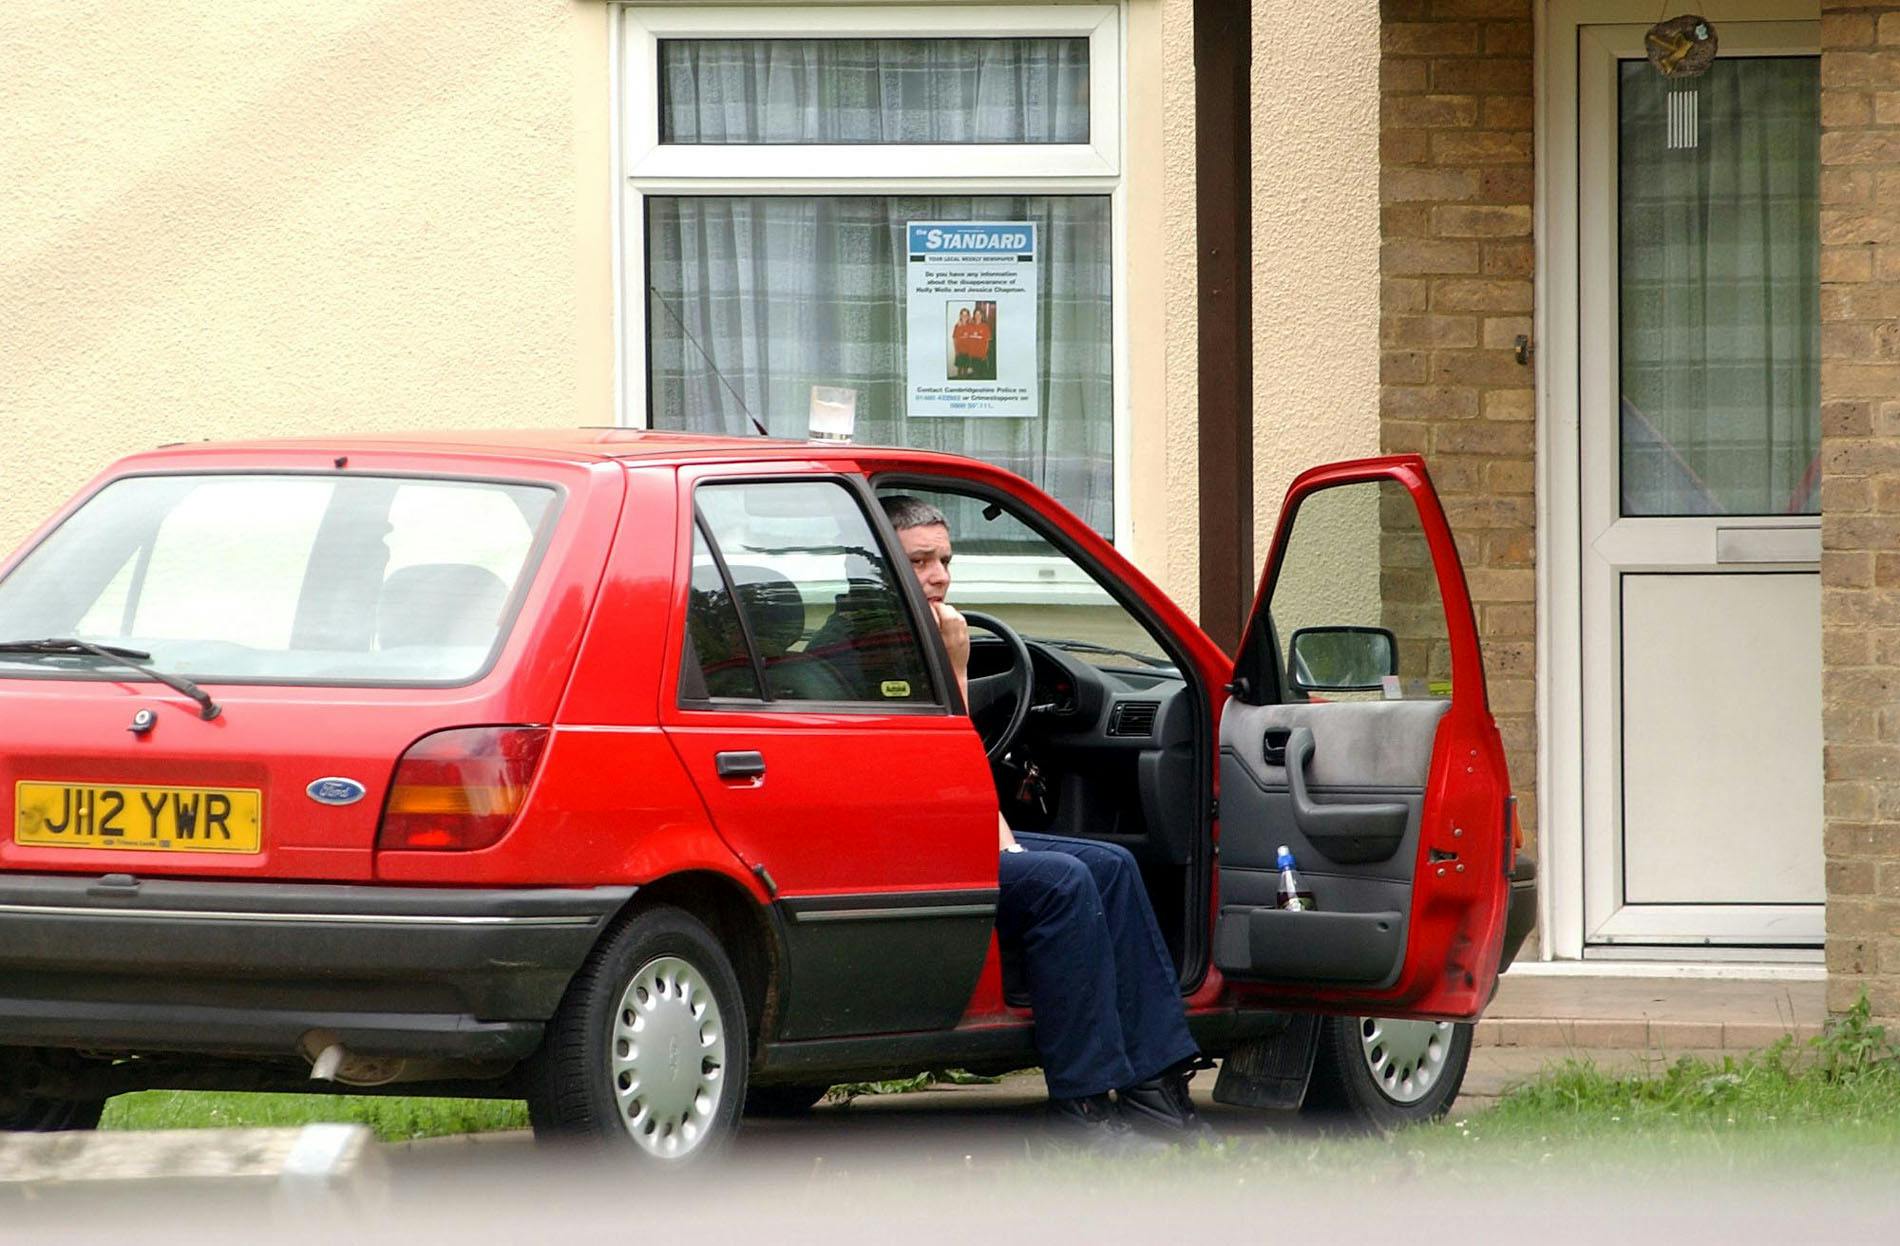 Ian Huntley i sin røde bil få dage inden, han blev anholdt. I hans vindue havde han hængt efterlysningsplakaten af pigerne op.
